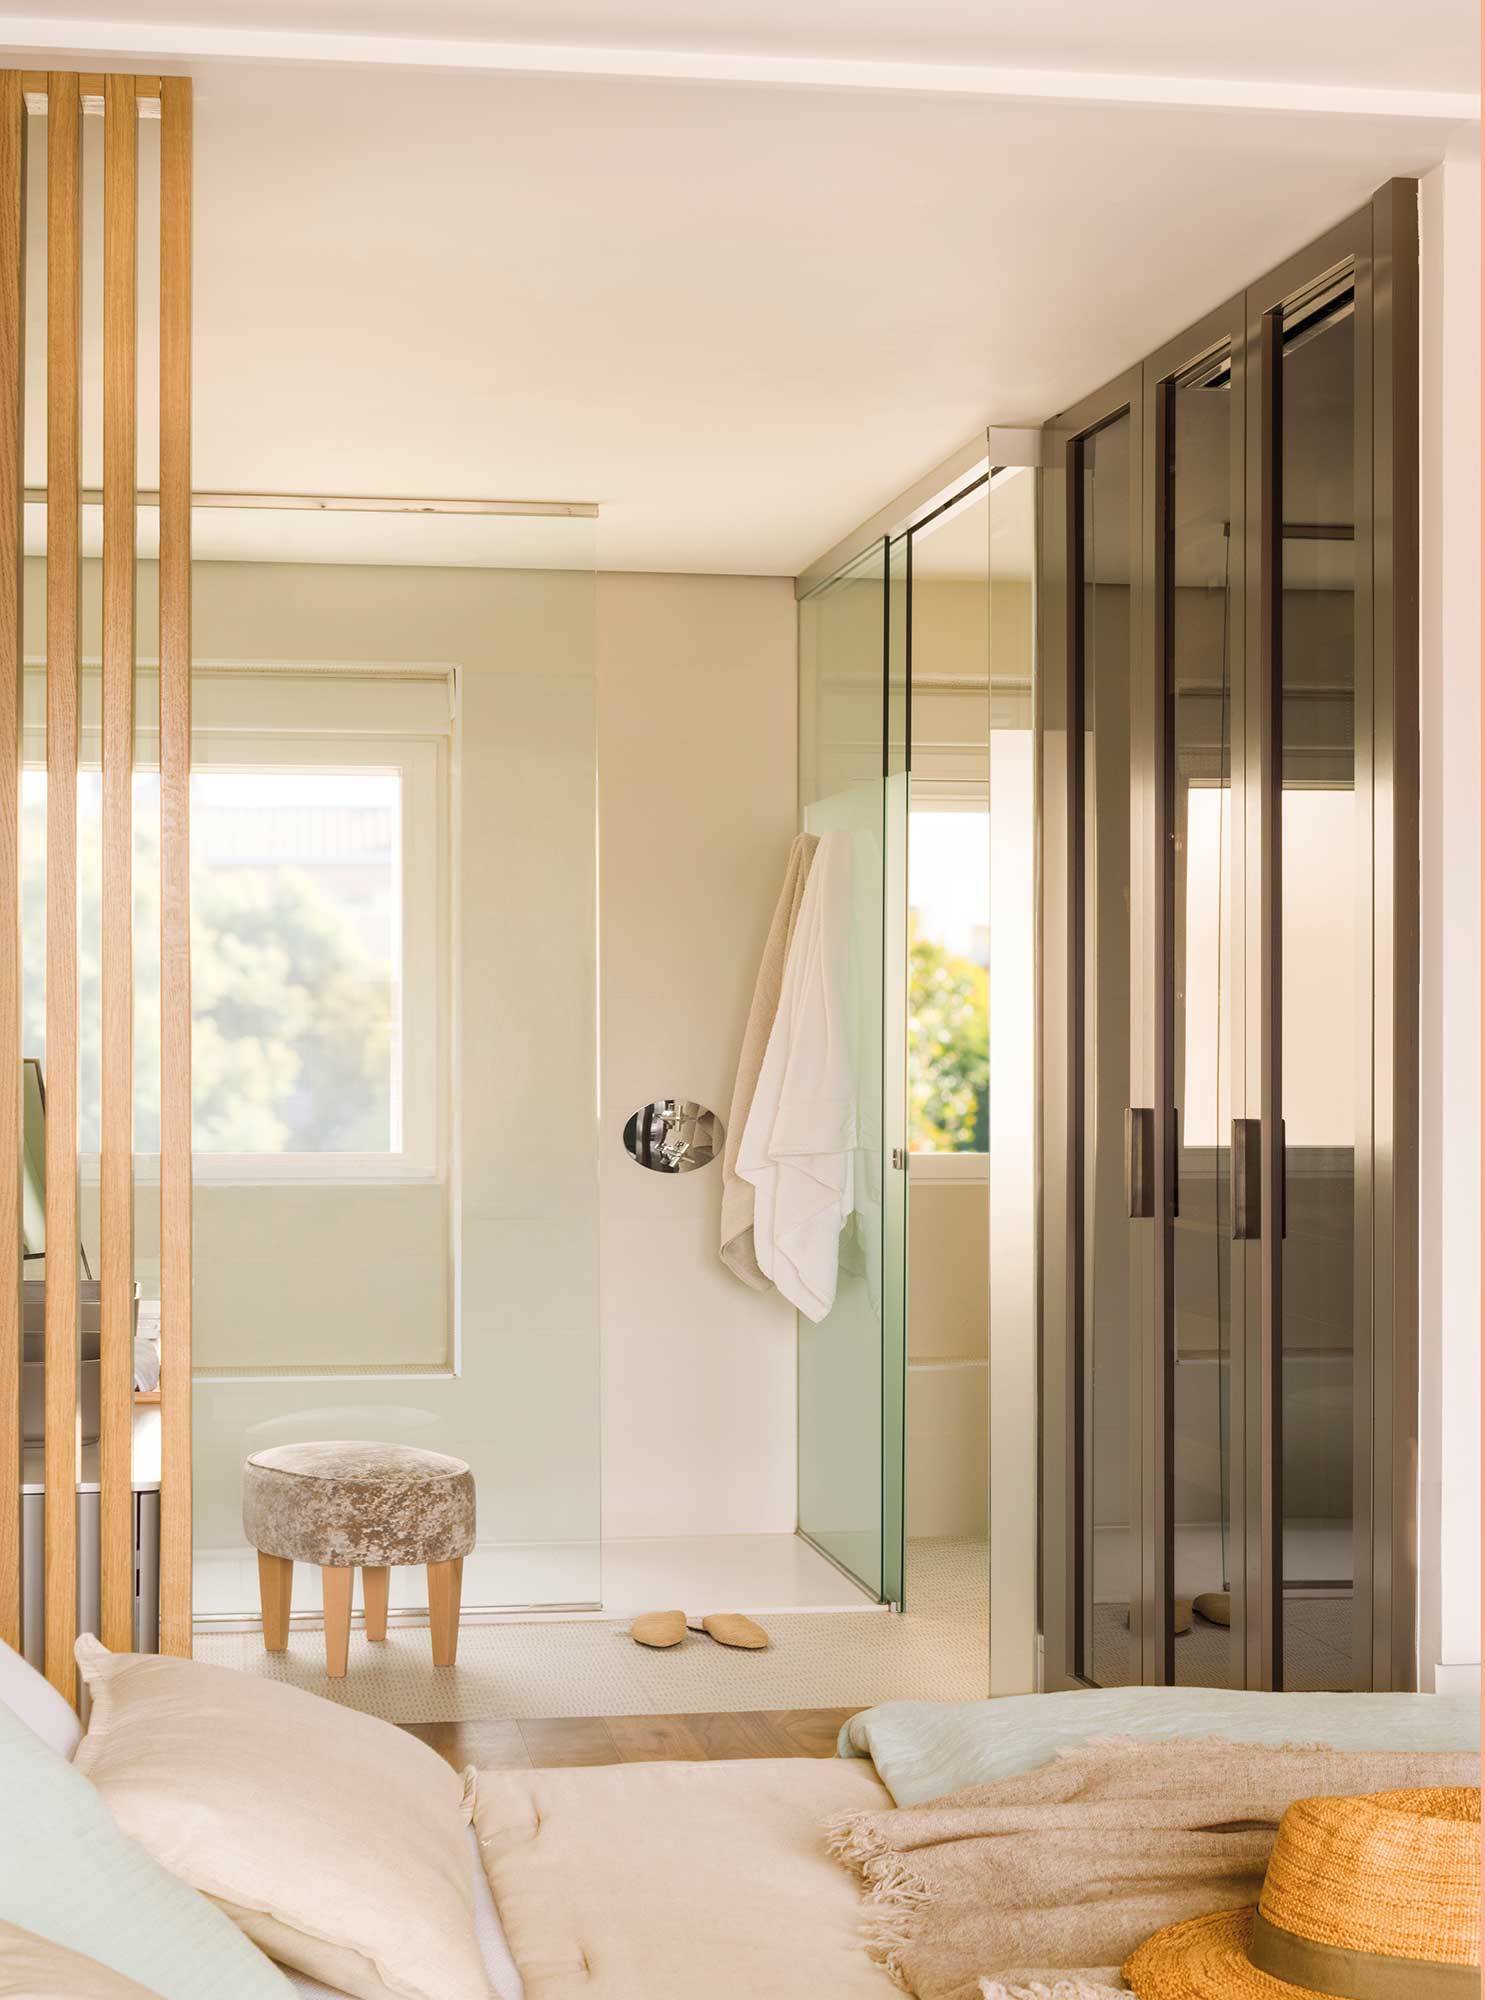 Baño reformado con ducha acristalada y sanitarios separados en una cabina. 